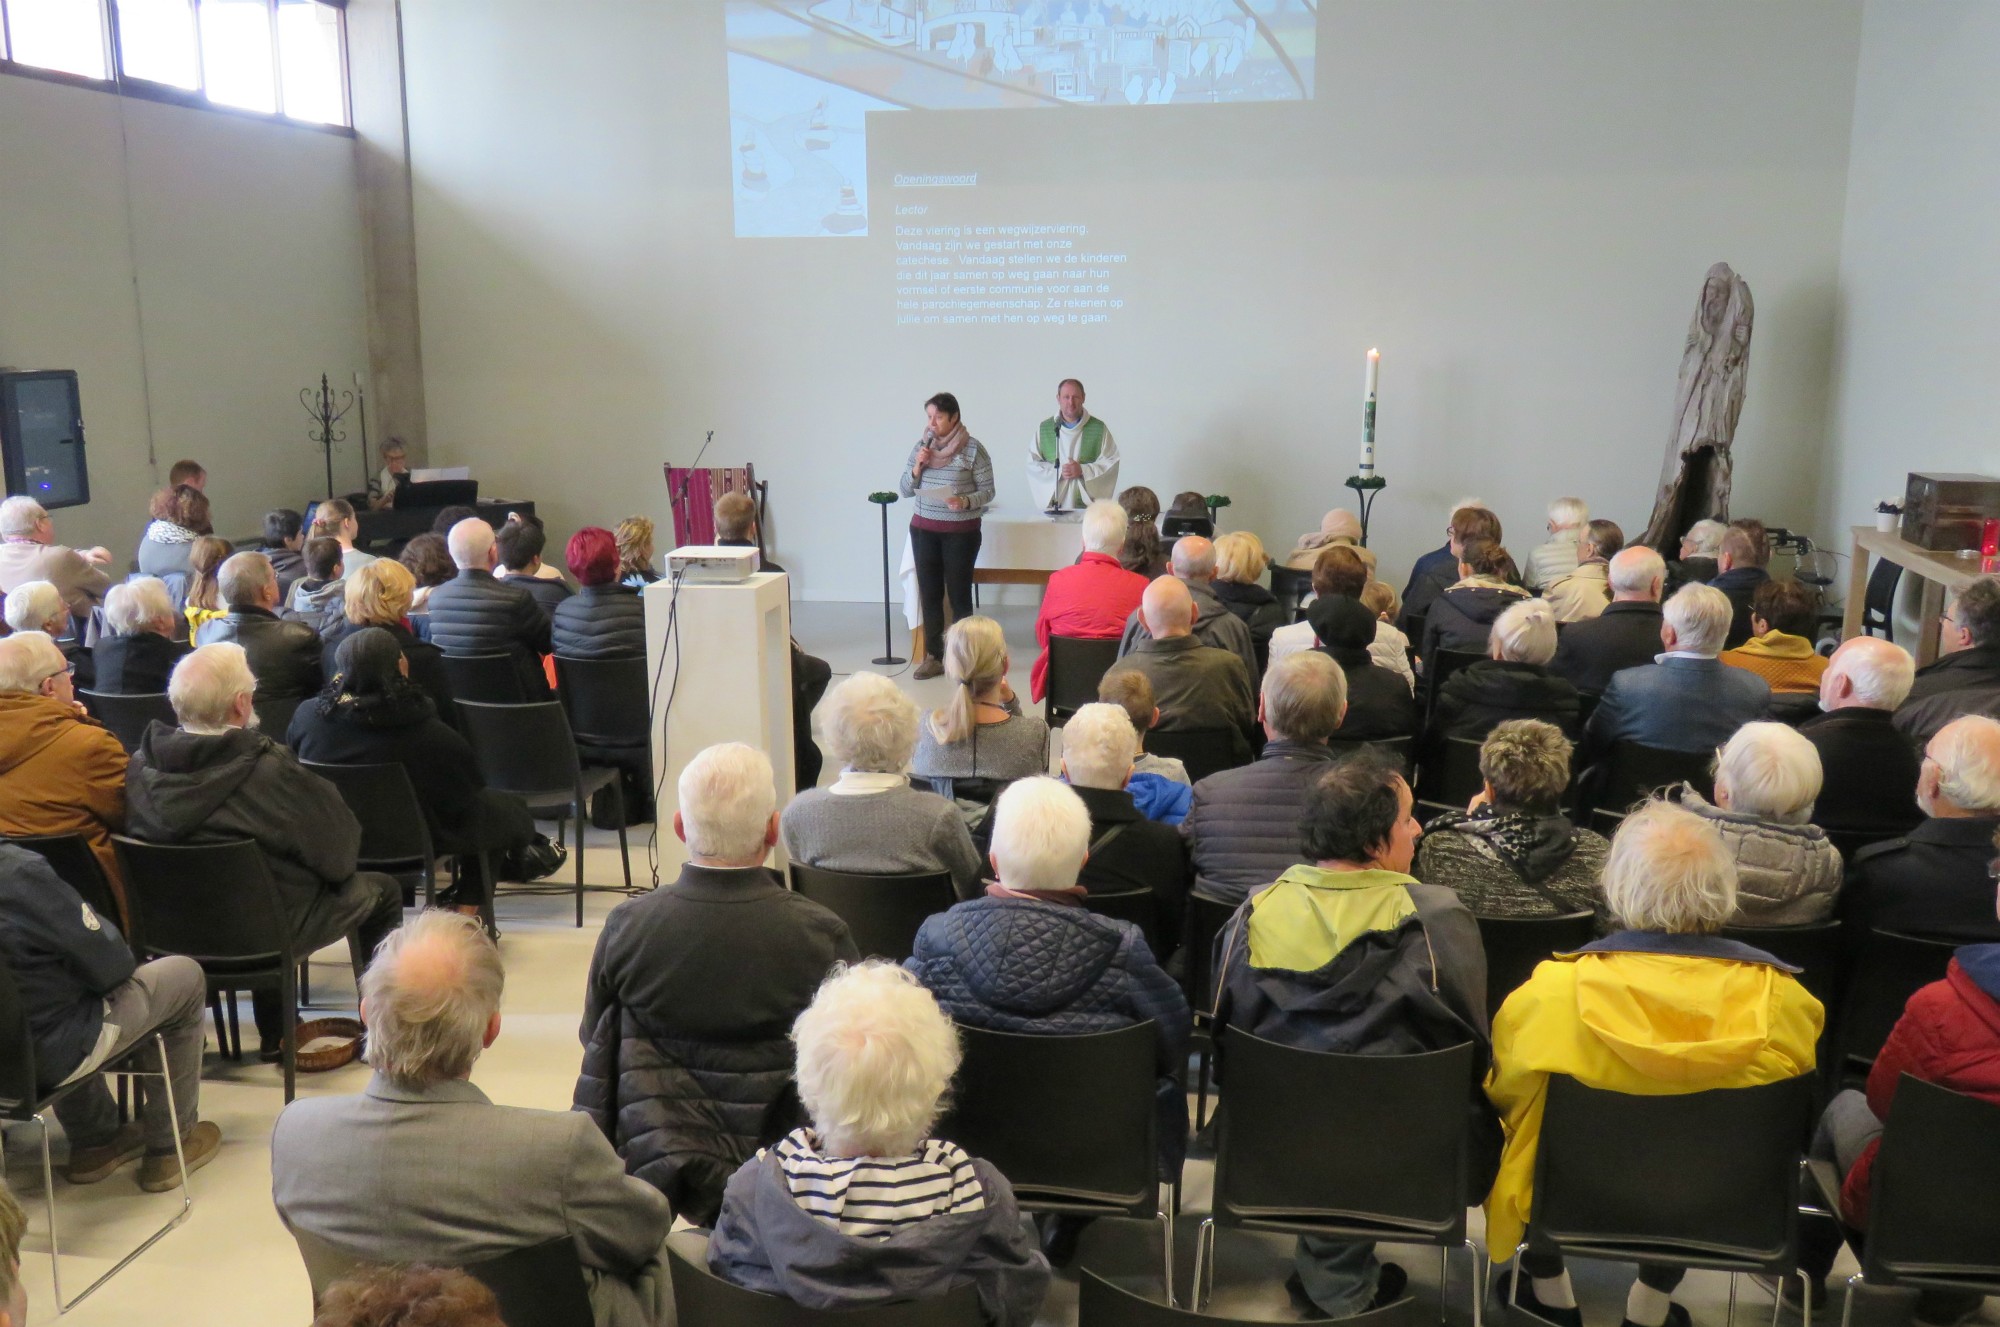 Voorstelling van de vormelingen door catechist Veerle bij aanvang van de Wegwijzerviering in de Sint-Lucaskerk